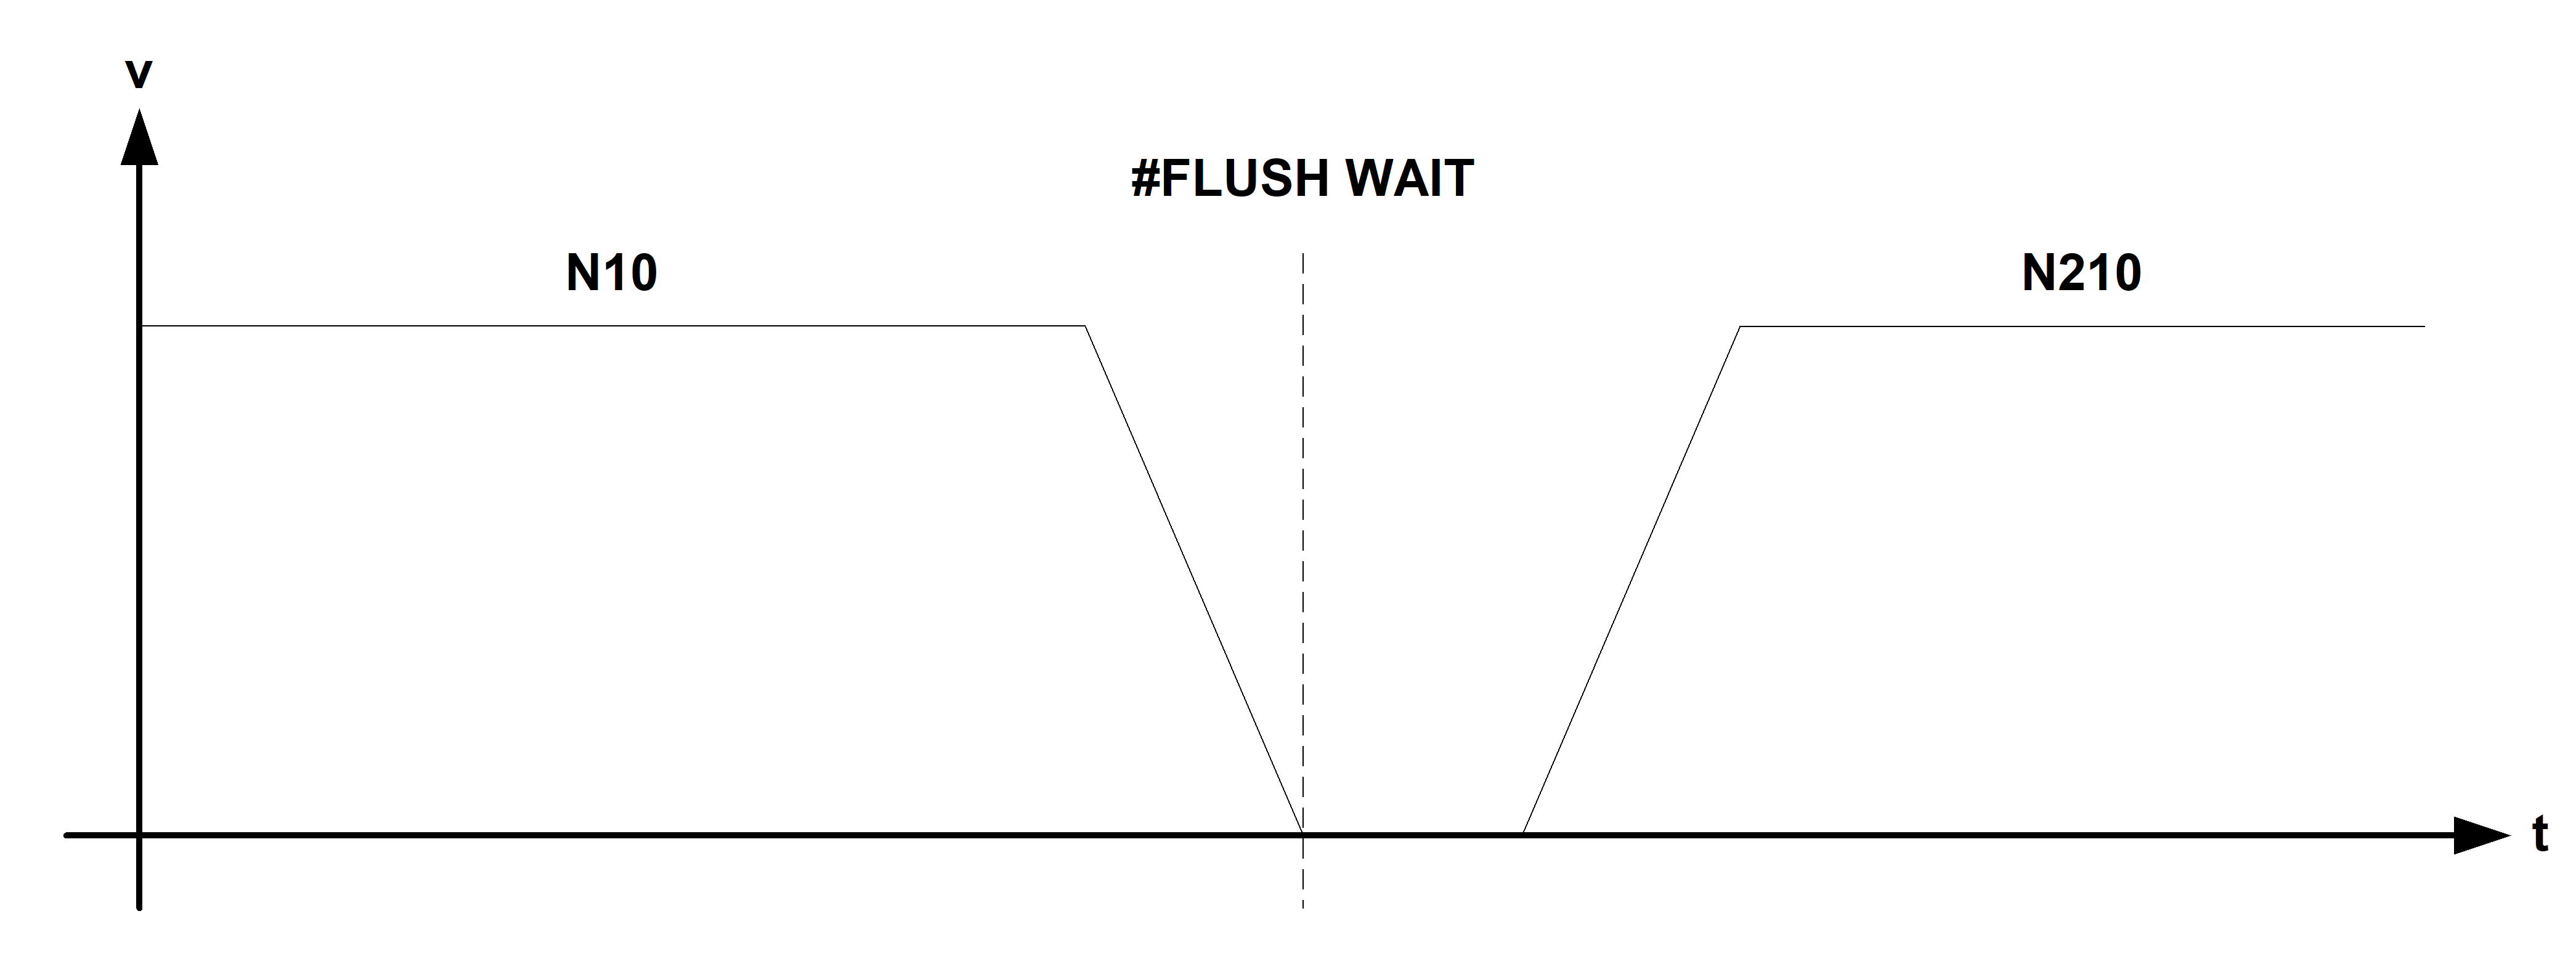 Wirkungsweise #FLUSH WAIT zwischen 2 Verfahrsätzen